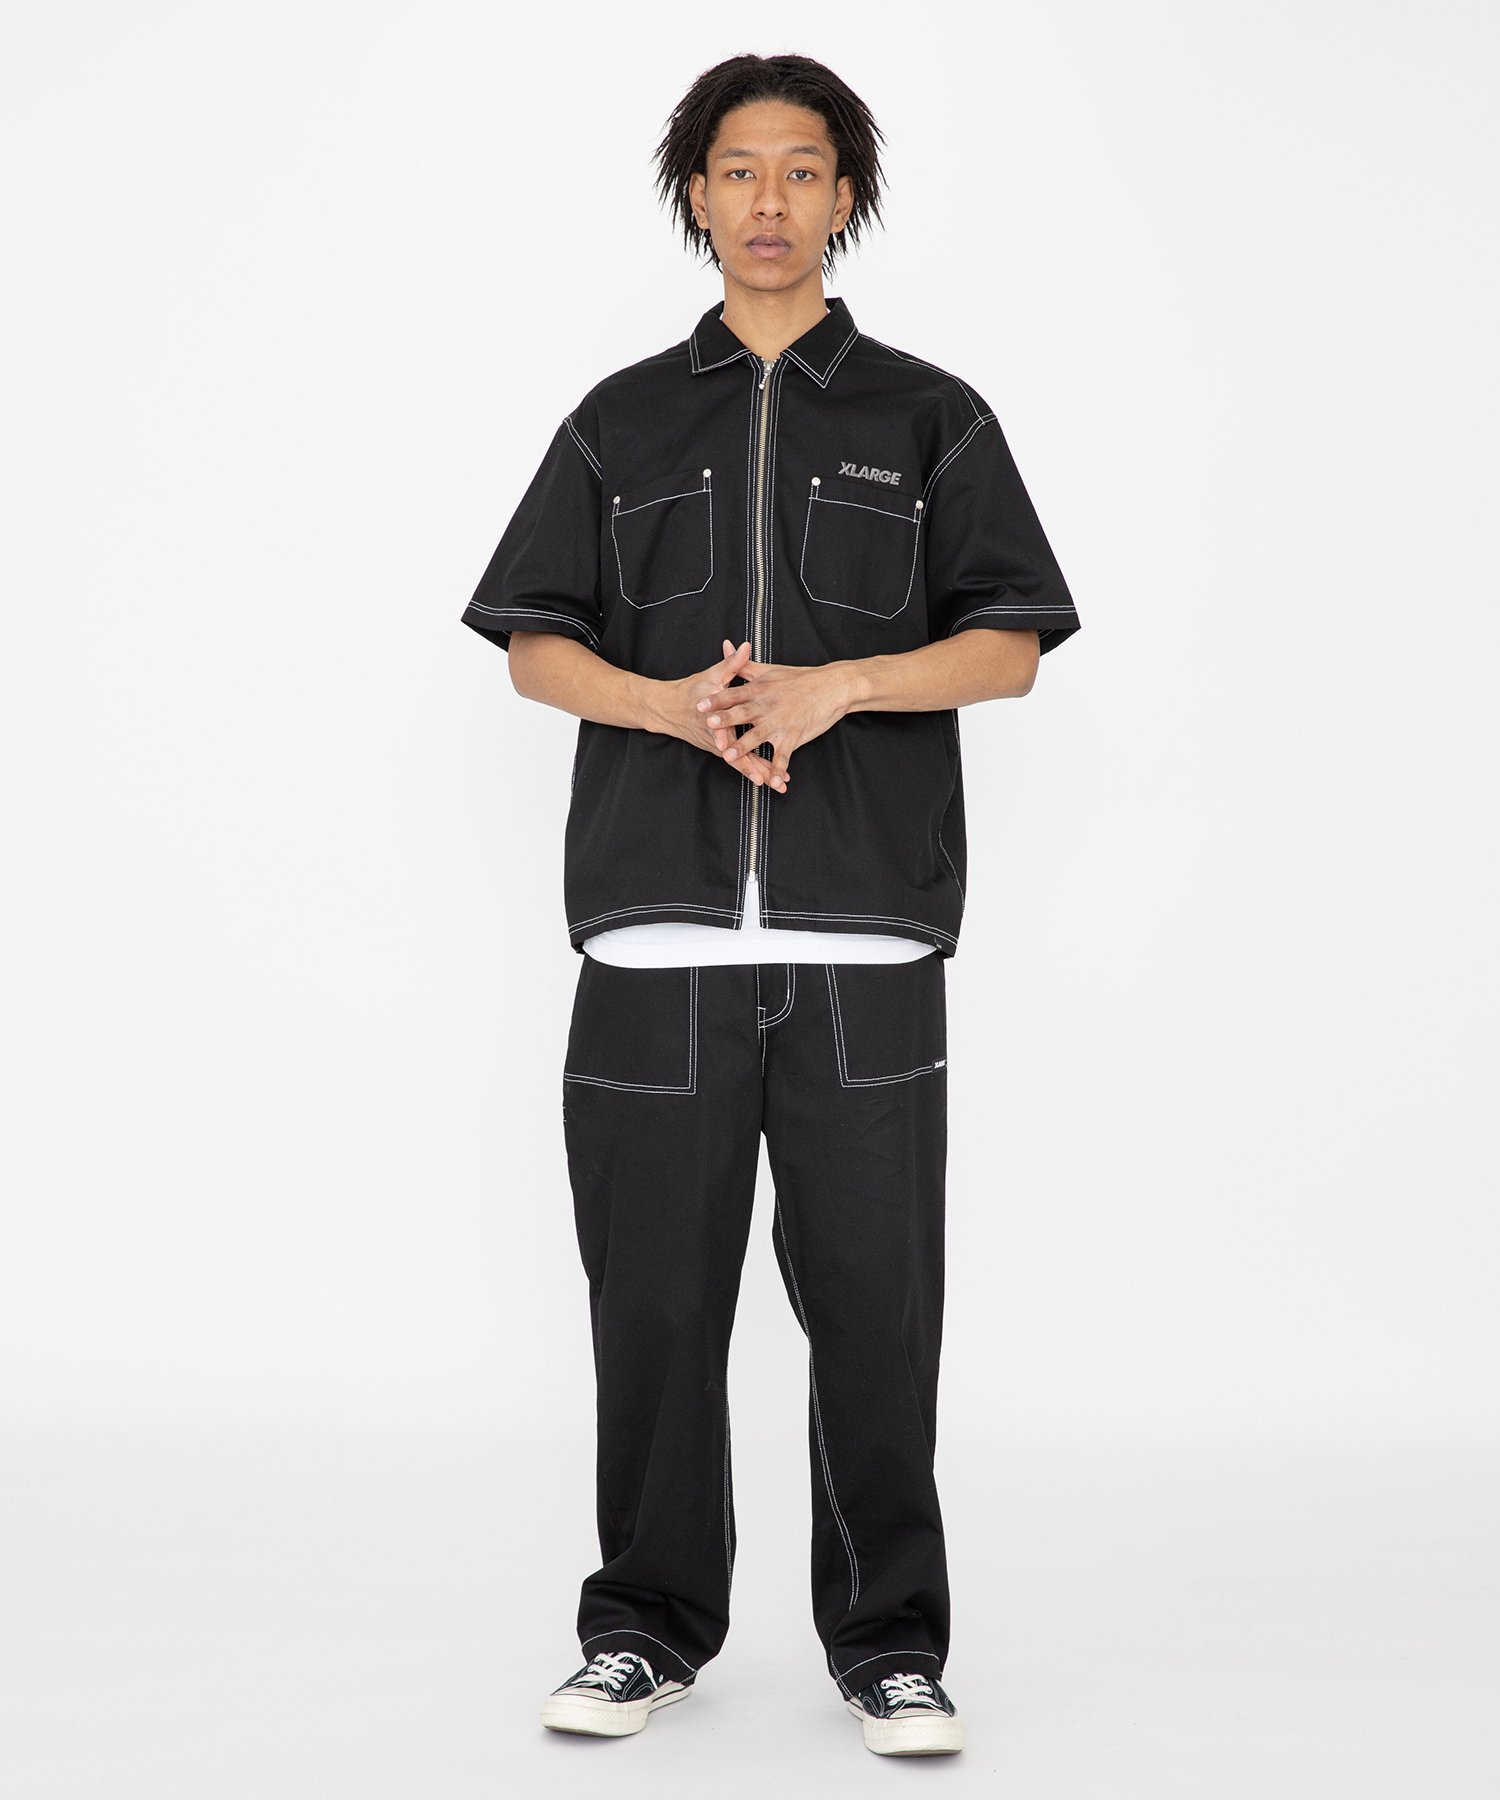 XLARGE｜STITCHED BAKER WORK PANTS パンツ XLARGE | Rakuten Fashion